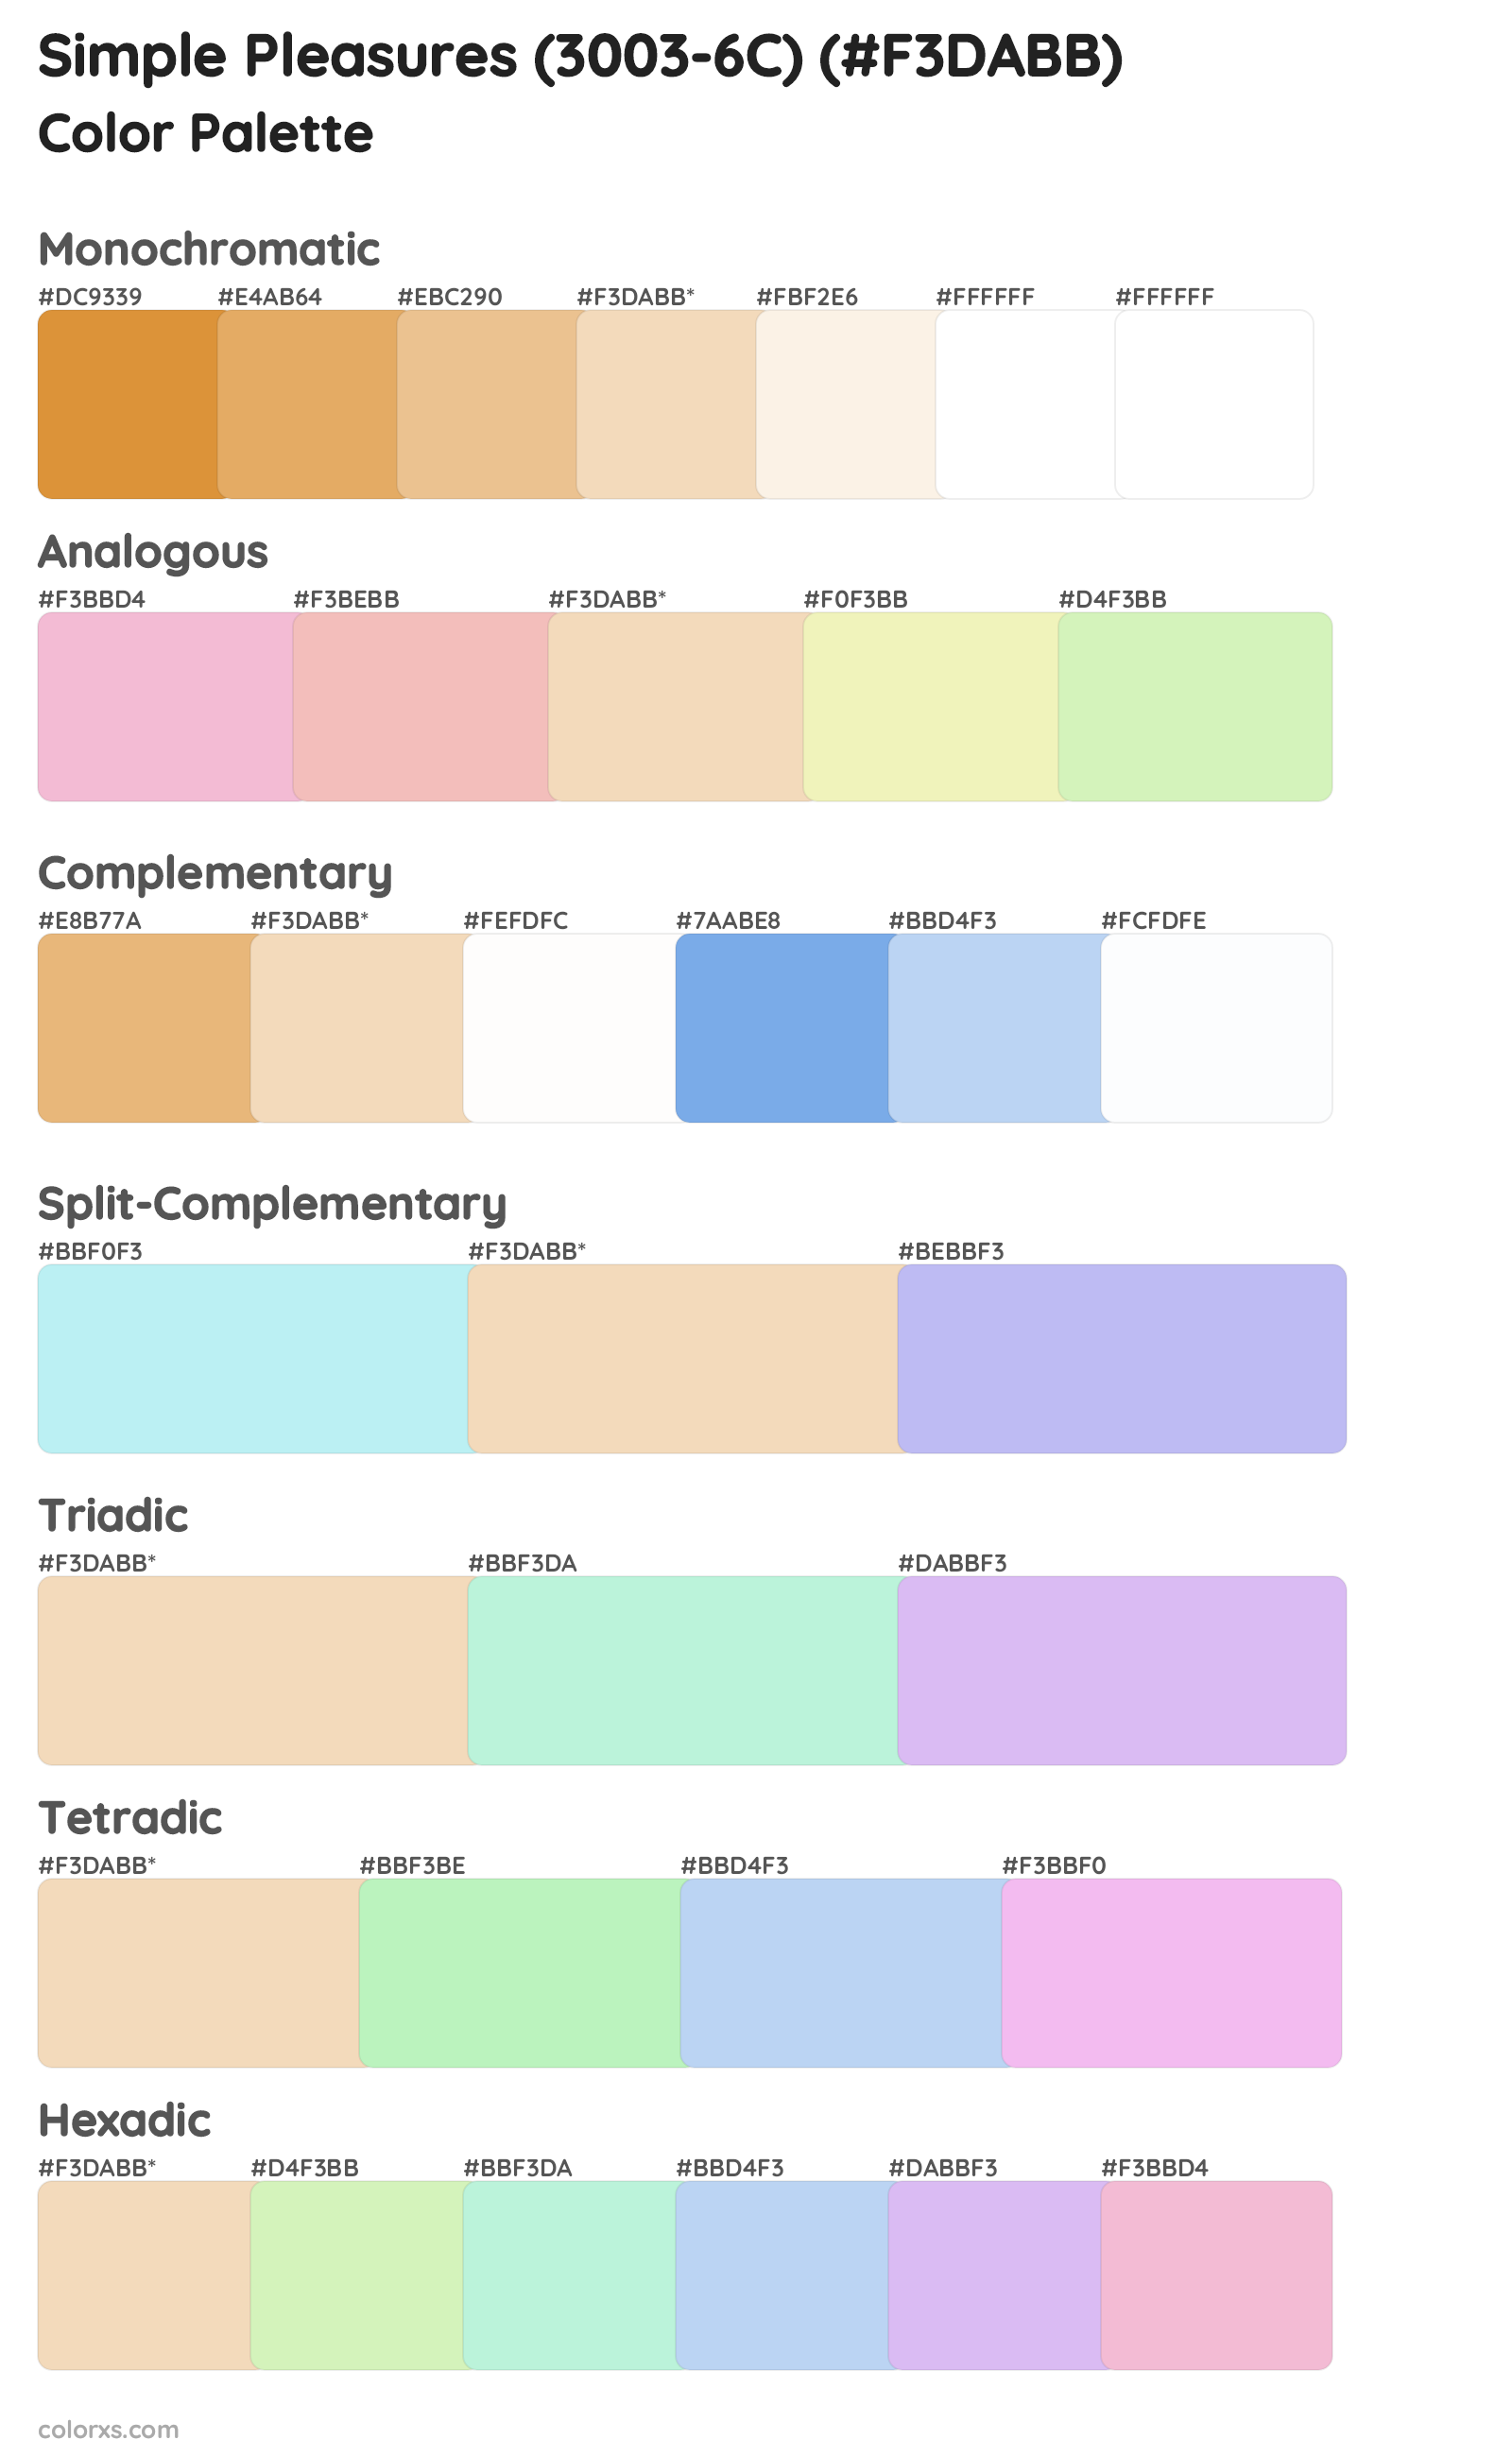 Simple Pleasures (3003-6C) Color Scheme Palettes